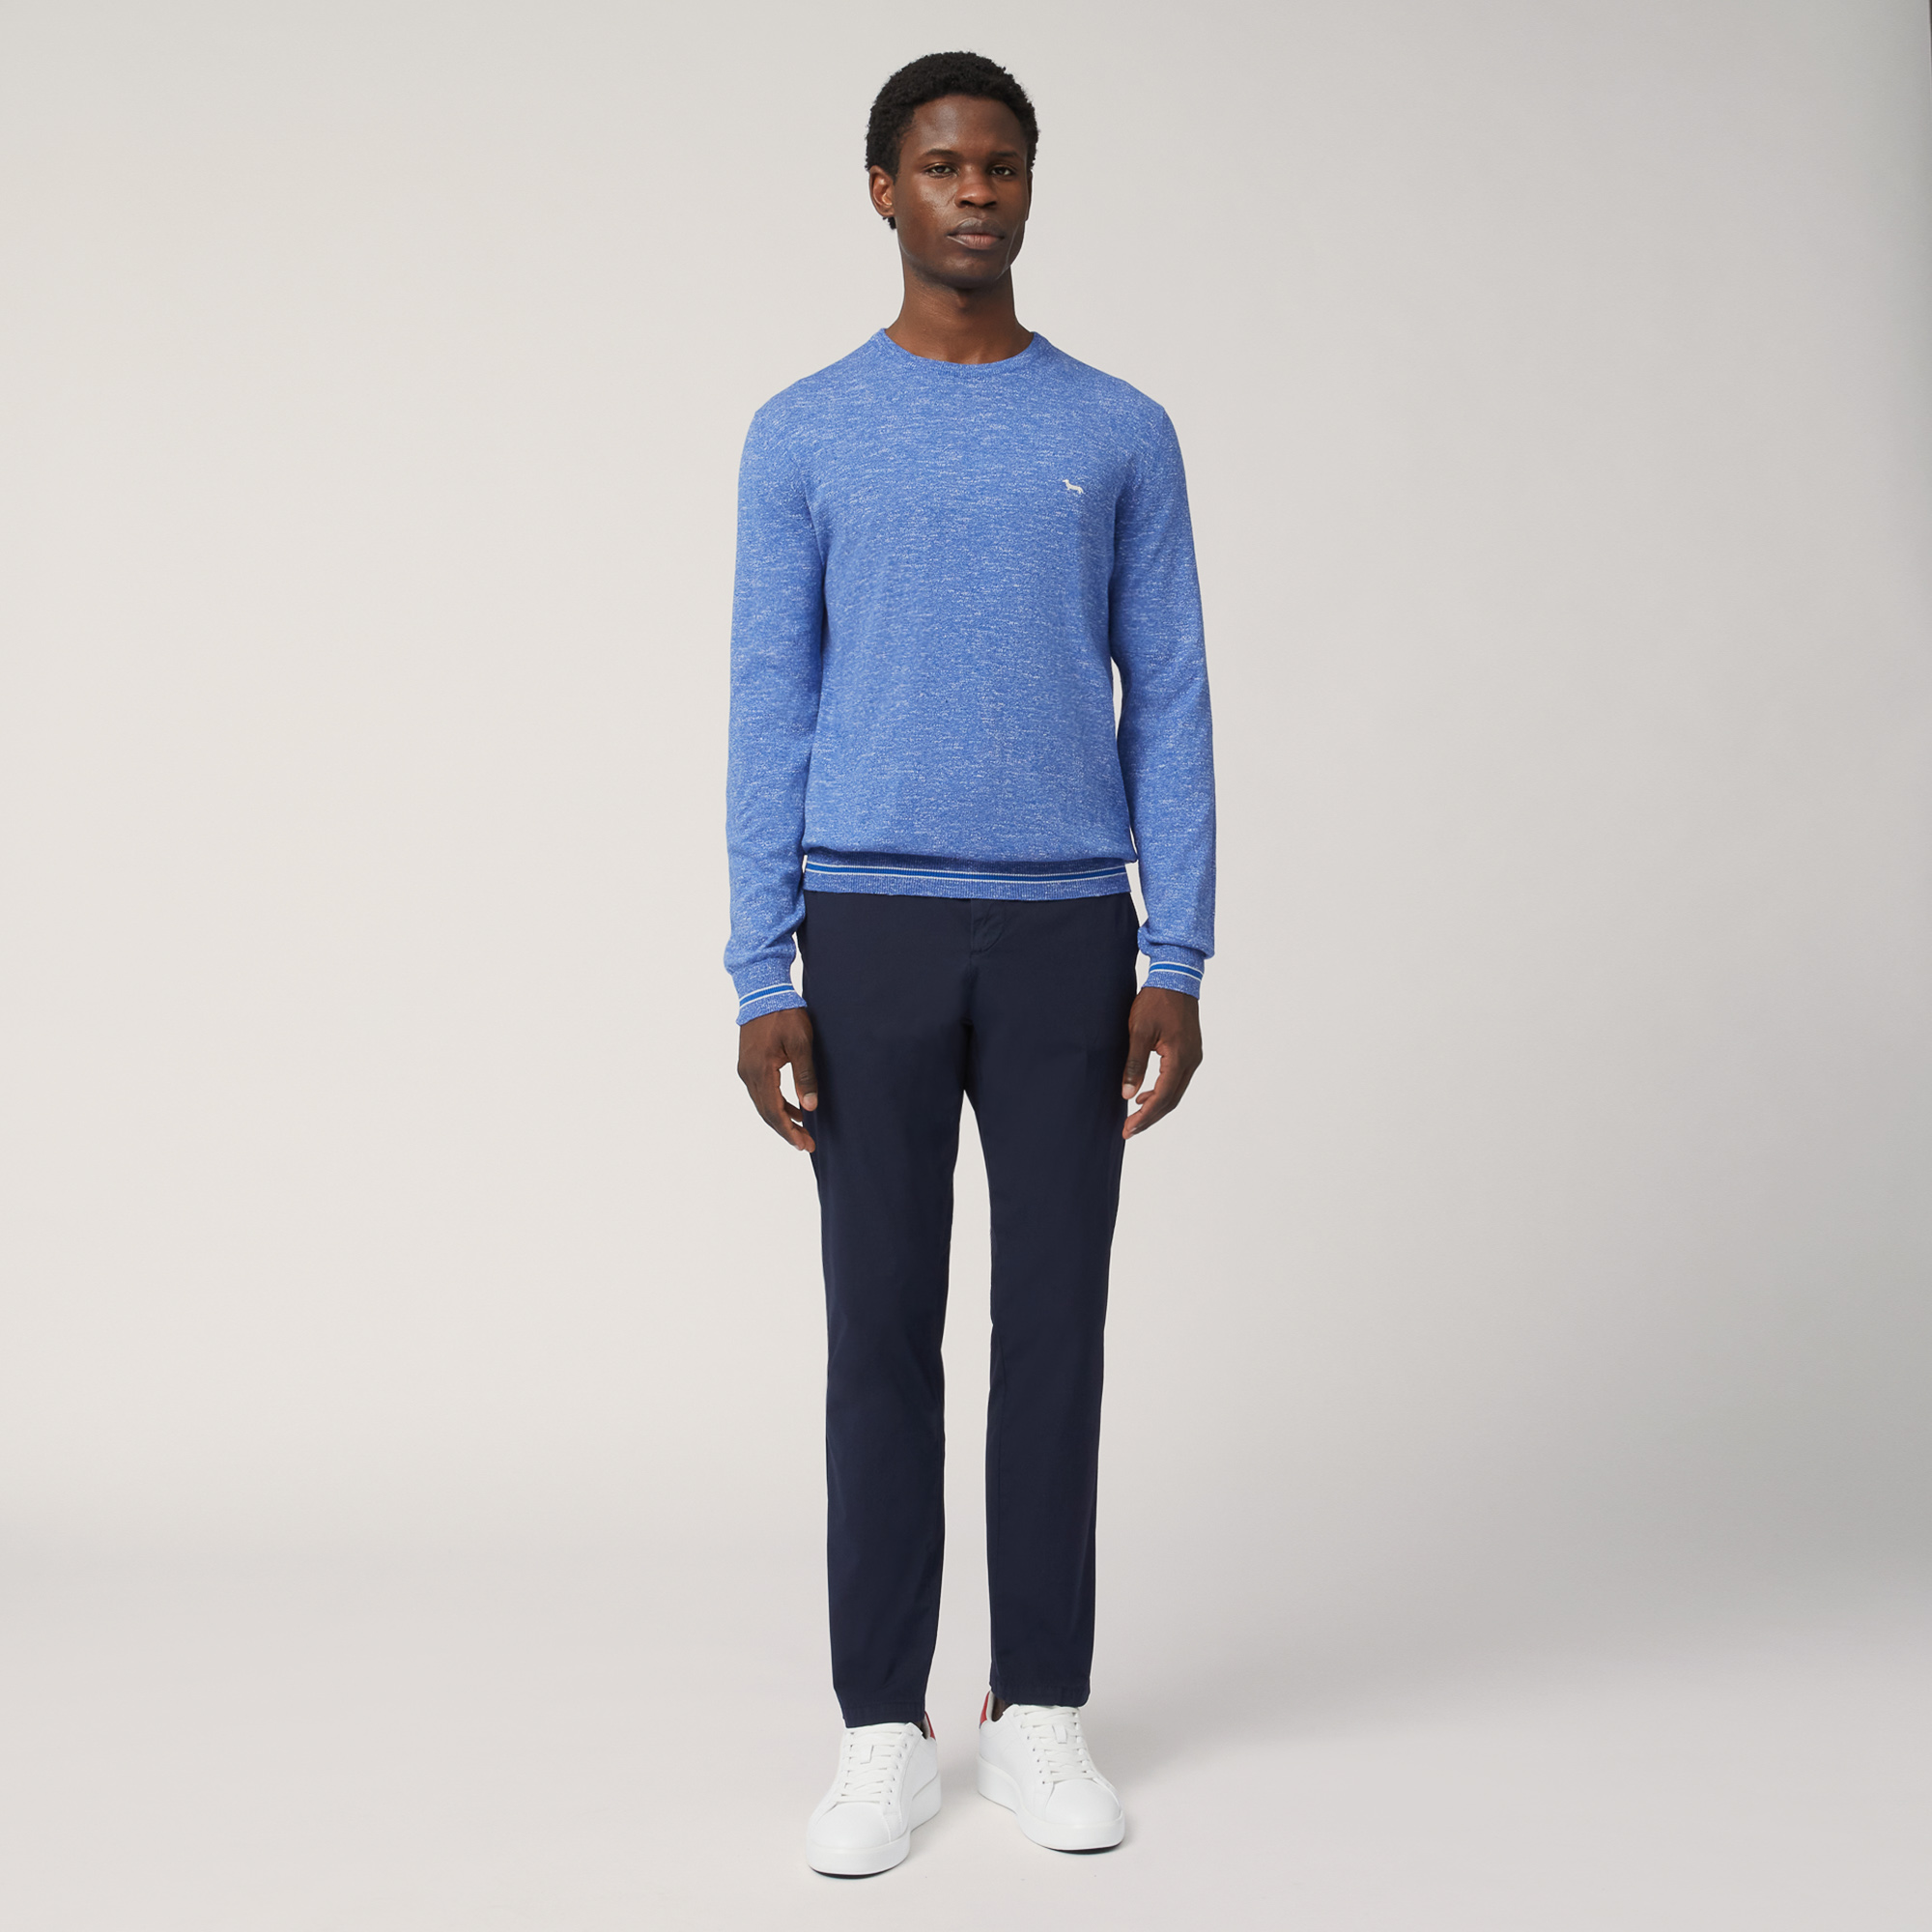 Cotton Blend Tweed Pullover, Light Blue, large image number 3